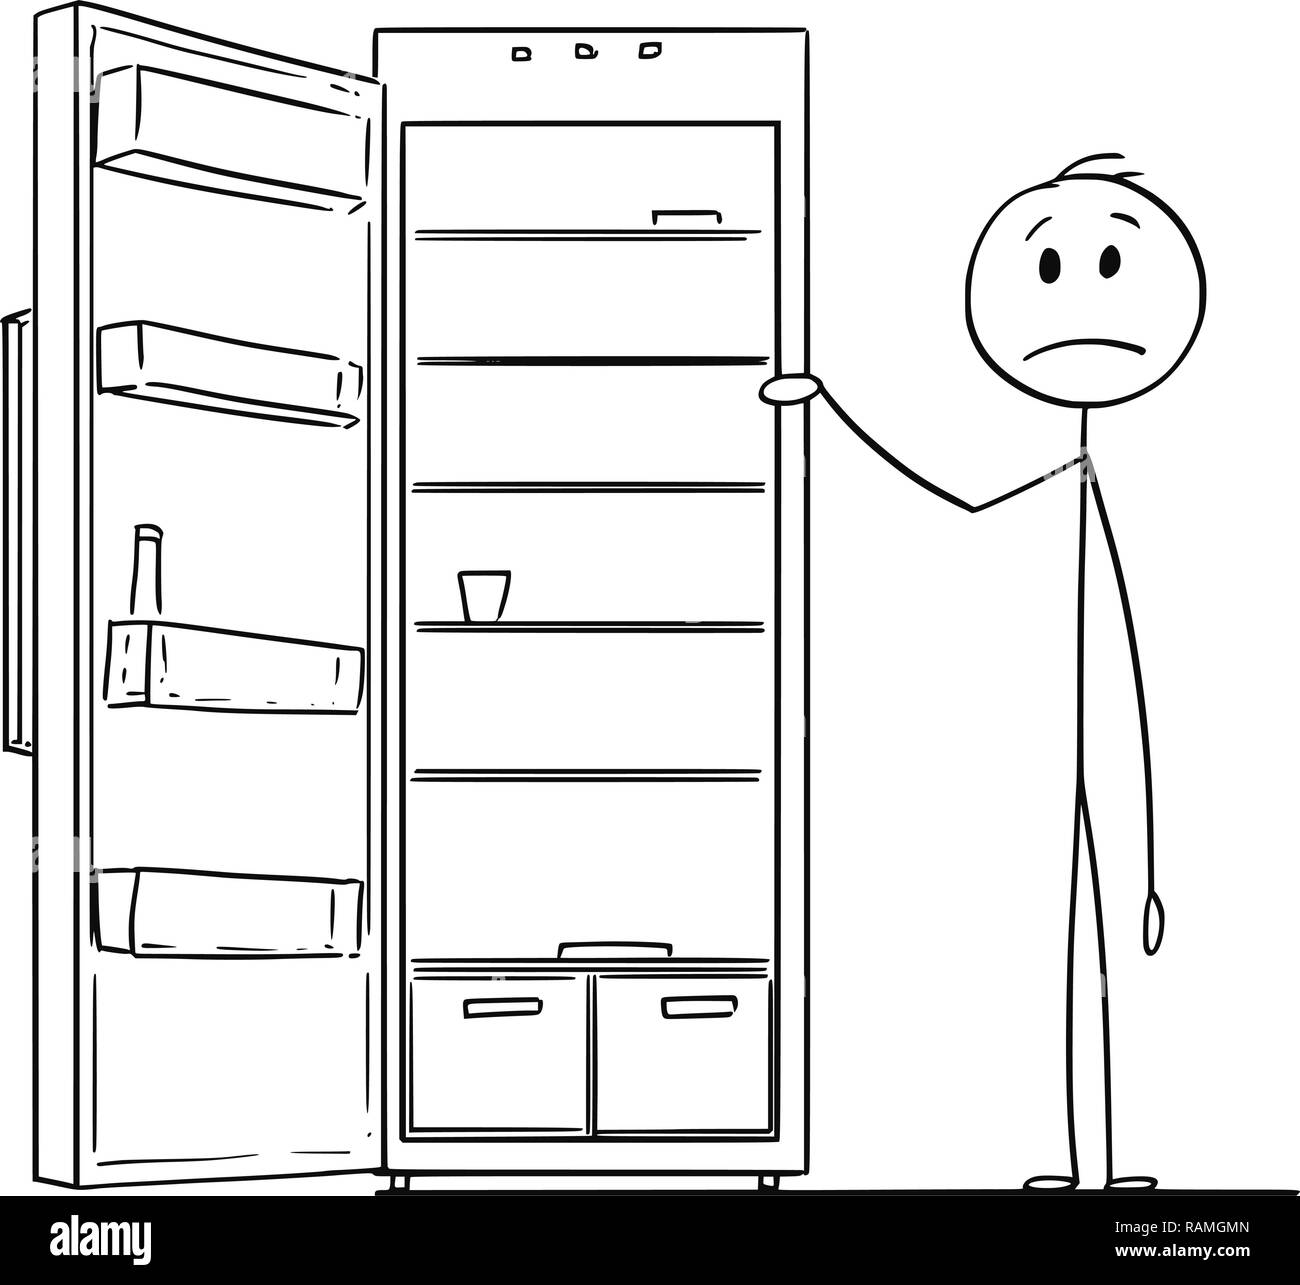 Caricatura de hombre hambriento y nevera vacía o refrigerador Ilustración del Vector